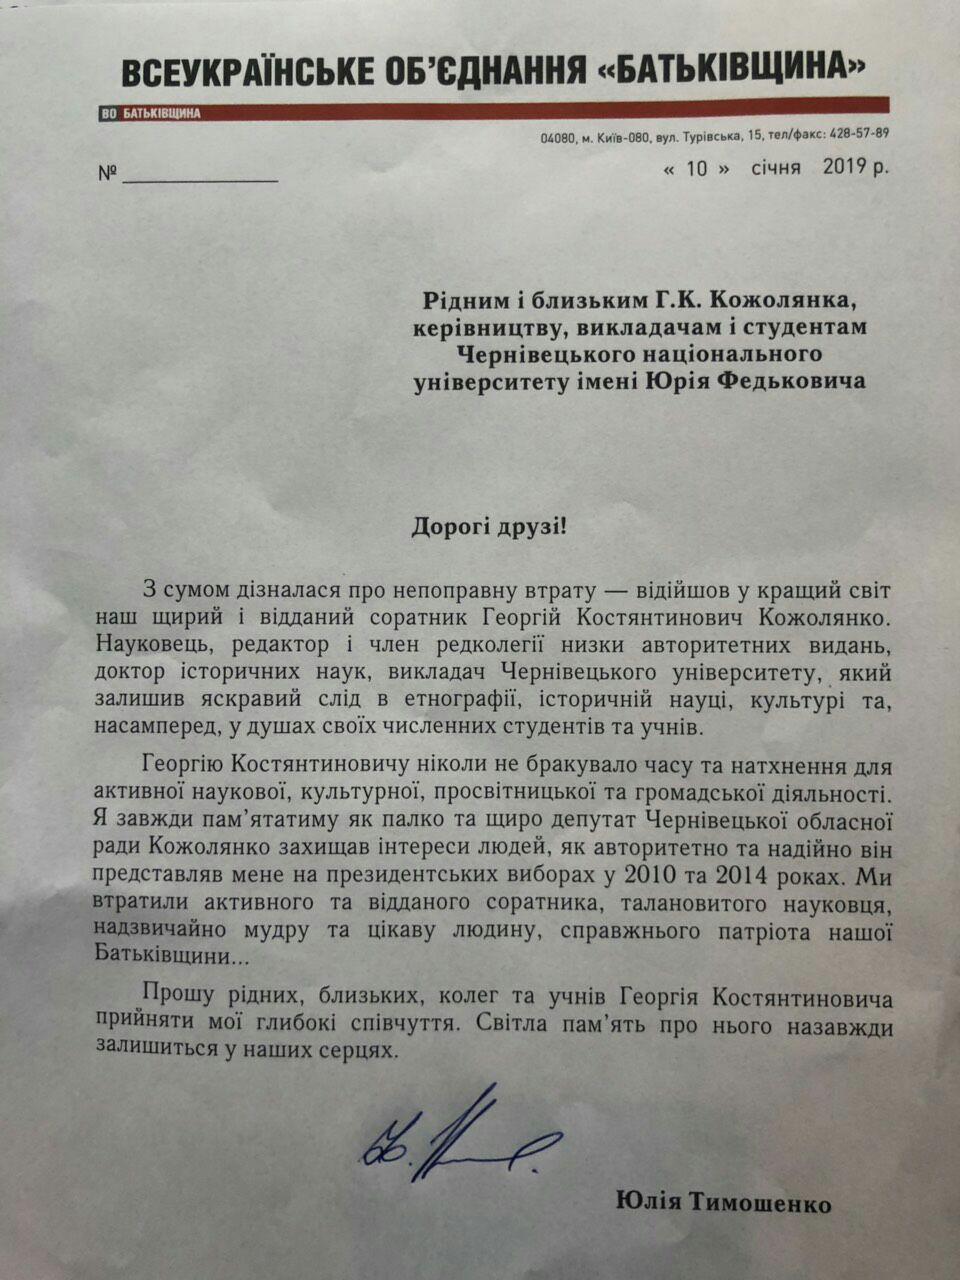 Юлія Тимошенко висловила співчуття з приводу смерті Георгія Кожолянка, який був її довіреною особою, як кандидатки в Президенти України